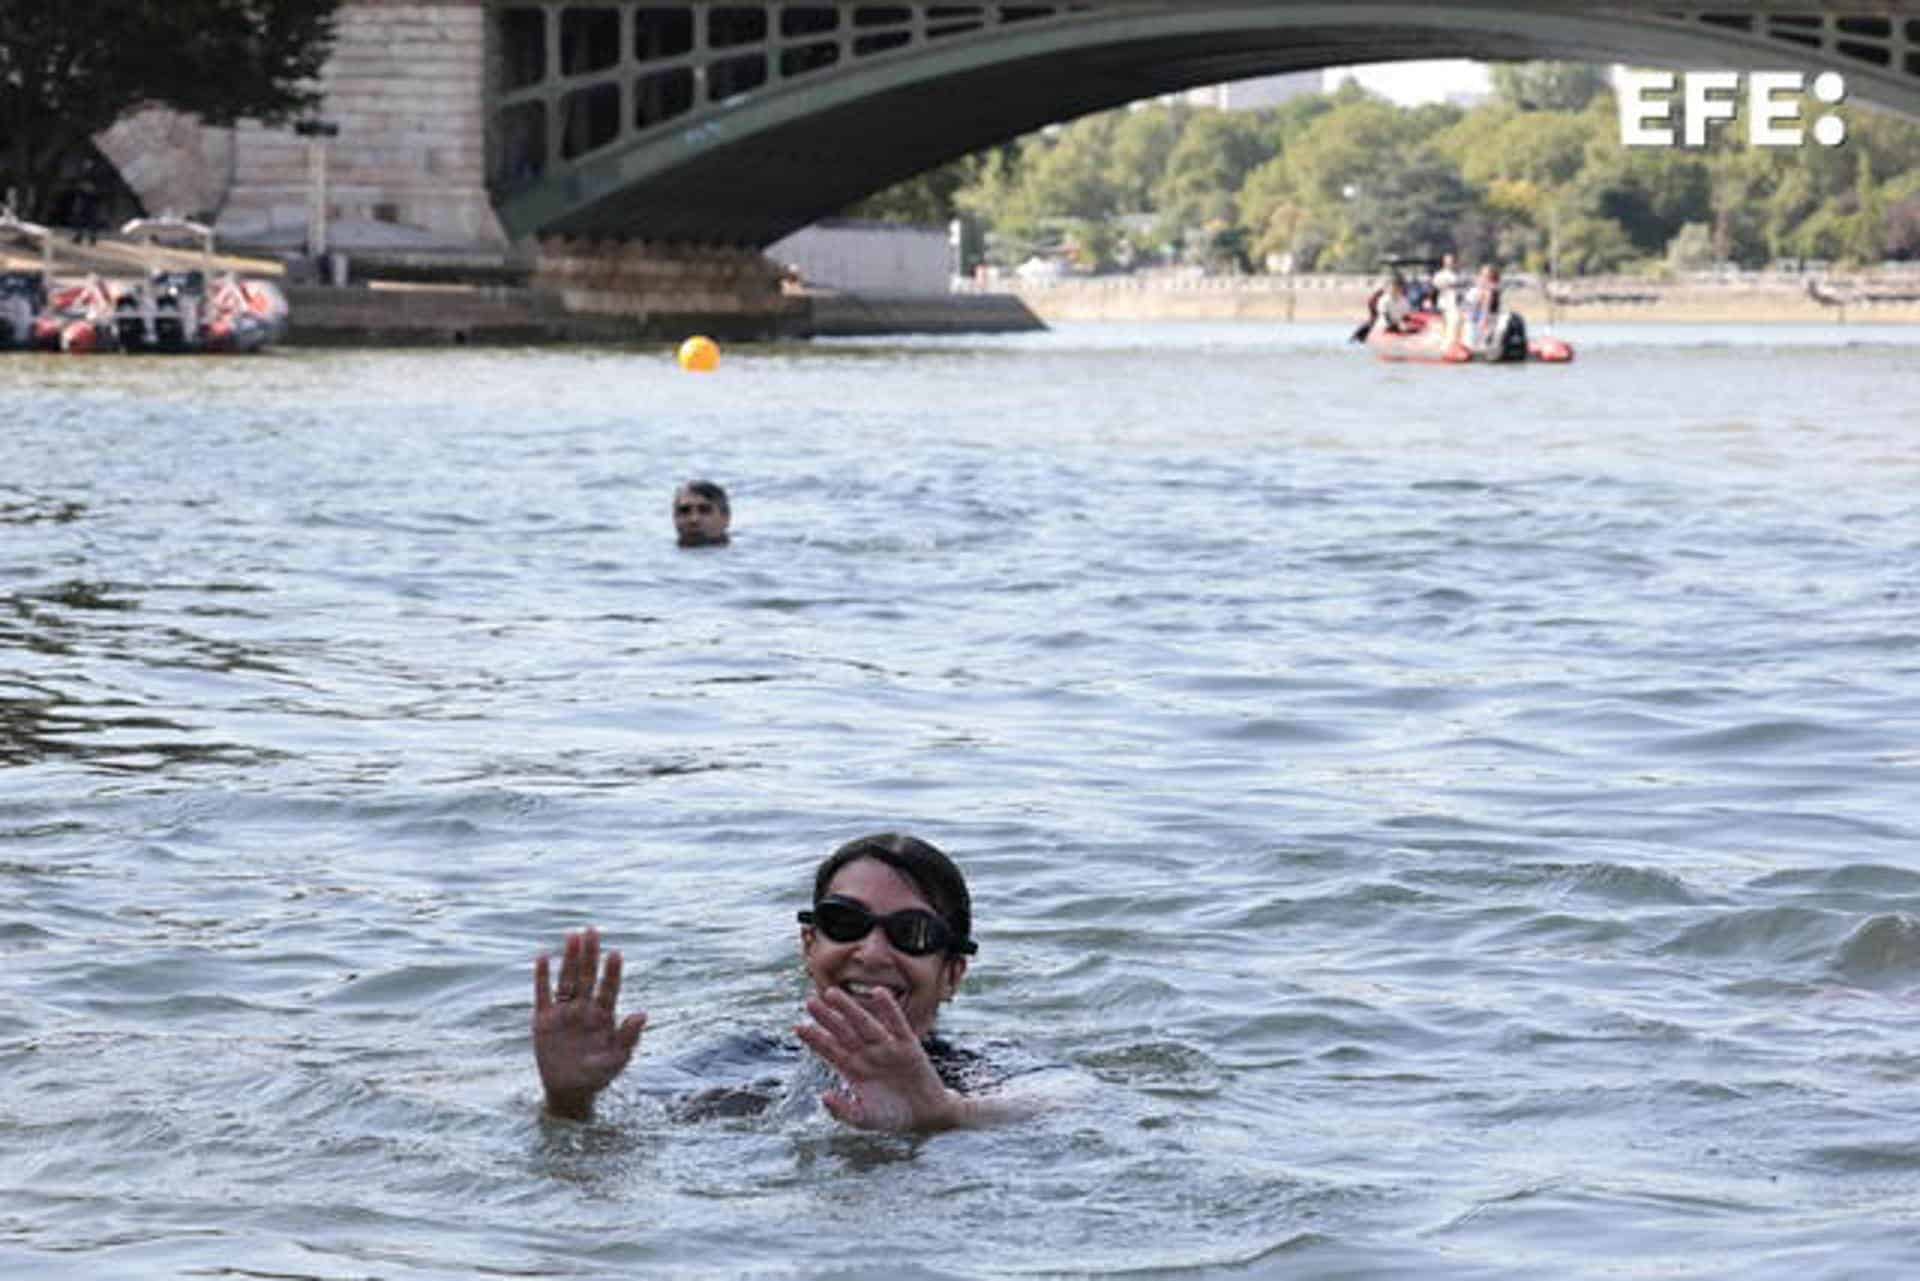 El agua del Sena no era apta cuando la alcaldesa de París se bañó para demostrar que sí